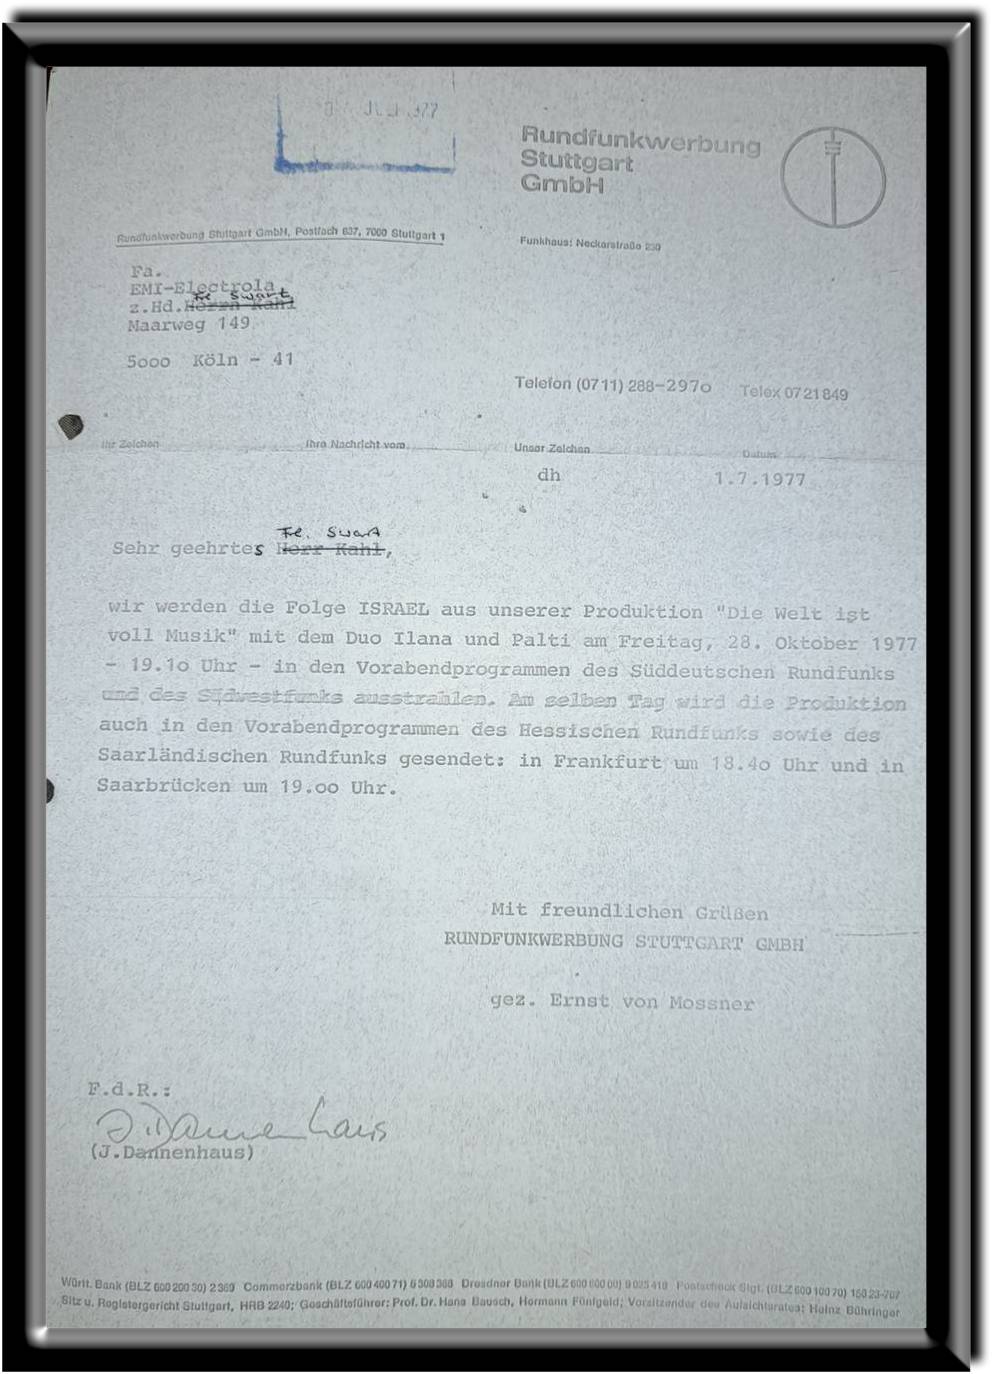 Letter of recommendation by J. Dannenhaus, Rundfunkwerbung Stuttgart GmbH, 1977.